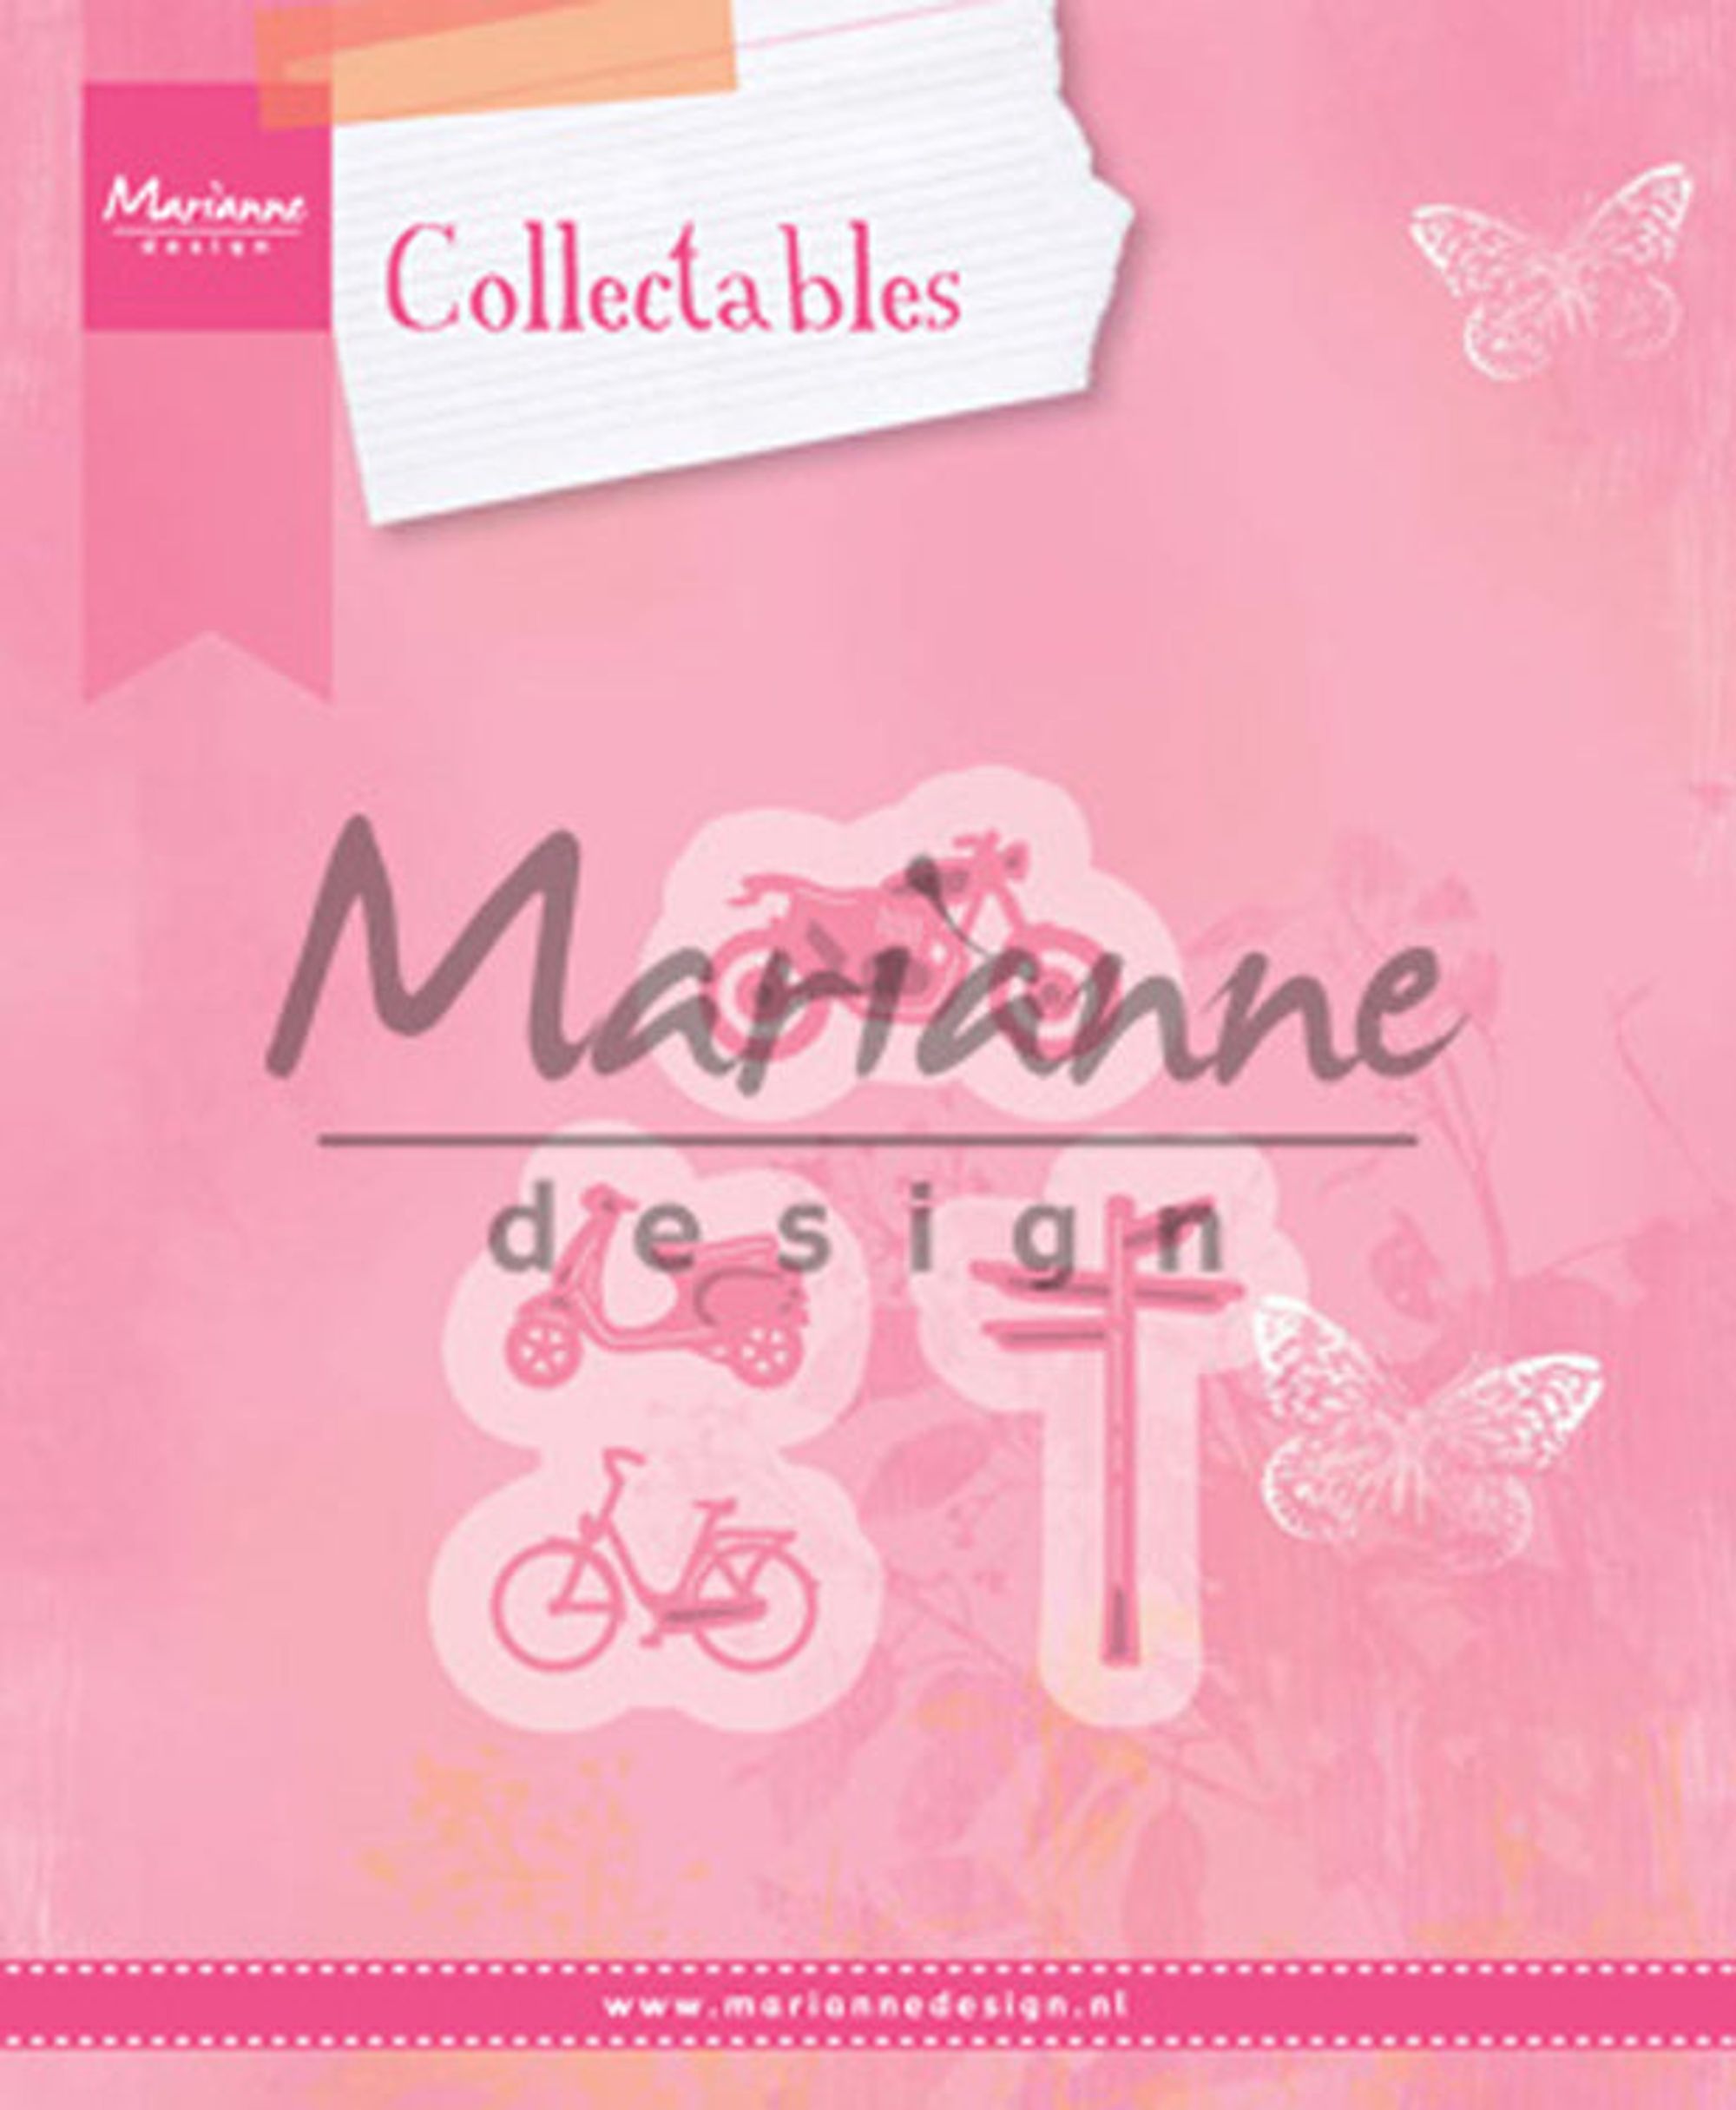 Marianne Design Village Decoration set 3 (bikes)